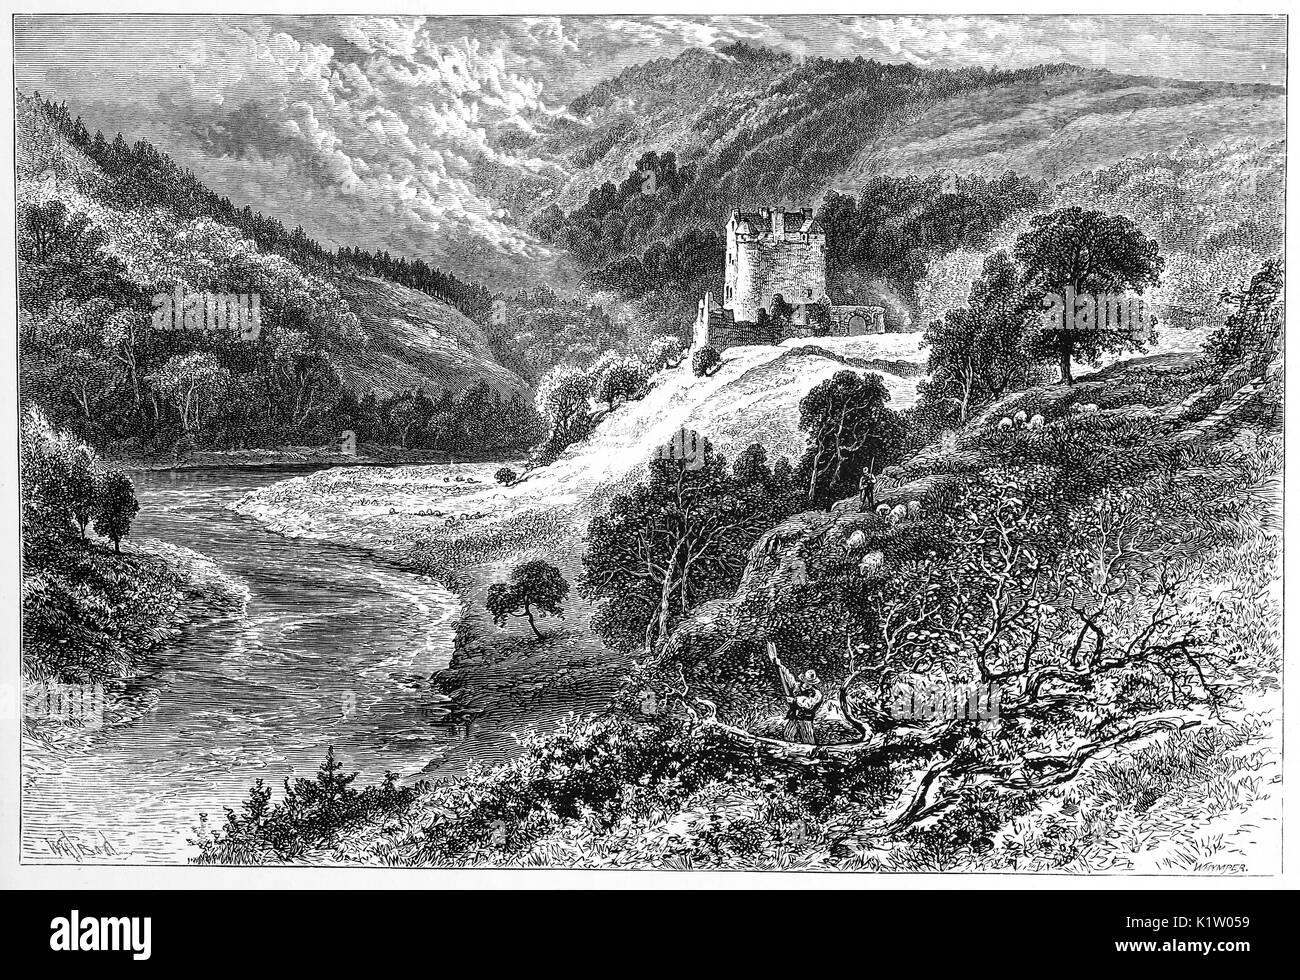 1870 : bûcheron, agriculteur et moutons dans un paysage avec le Château de Neidpath, une tour, construite par Sir William de Haya dans la fin du 14ème siècle. donnant sur la rivière Tweed, à environ un mille à l'ouest de Peebles dans les frontières de l'Ecosse, le Roxburghshire, Ecosse Banque D'Images